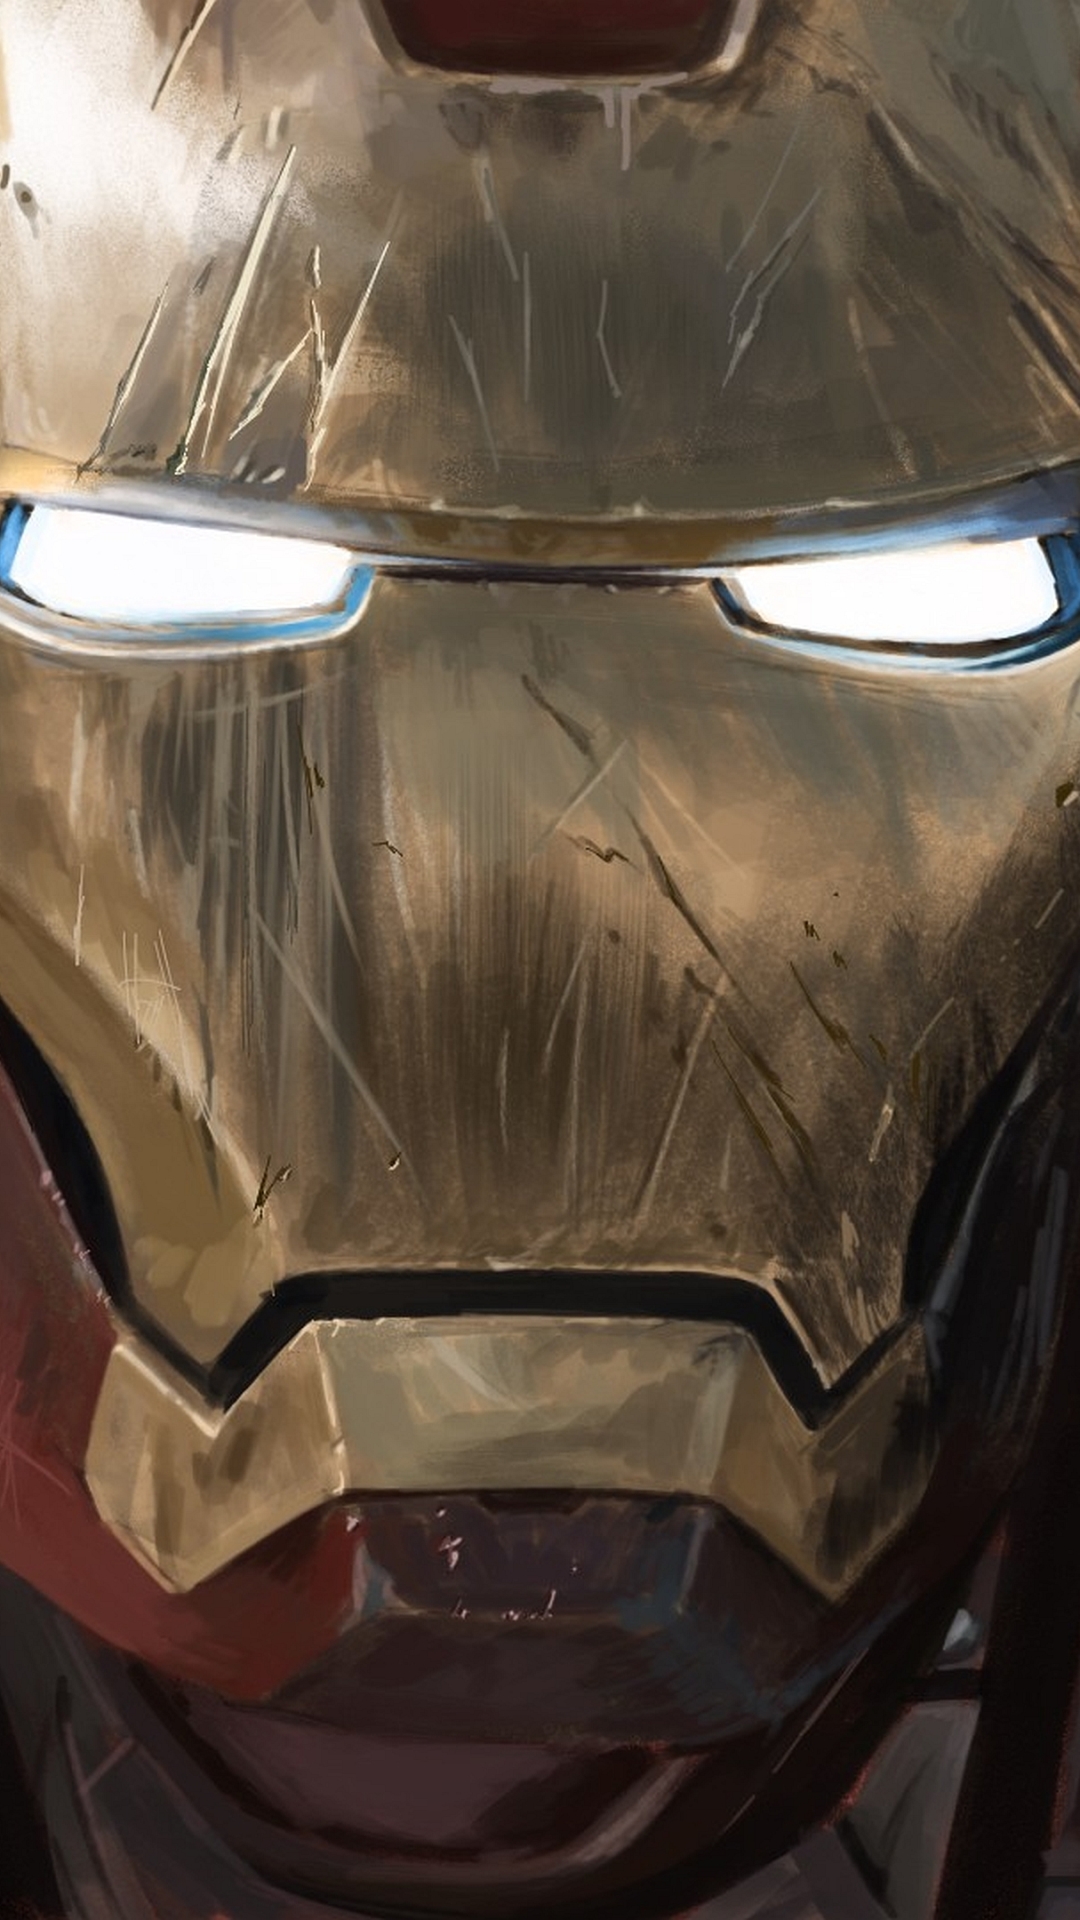 Nếu bạn là fan của Iron Man, bạn không thể bỏ qua hình chibi Iron Man đáng yêu này! Hãy xem và thưởng thức vẻ đáng yêu của Iron Man khi được tái tạo dưới dạng chibi nhé!